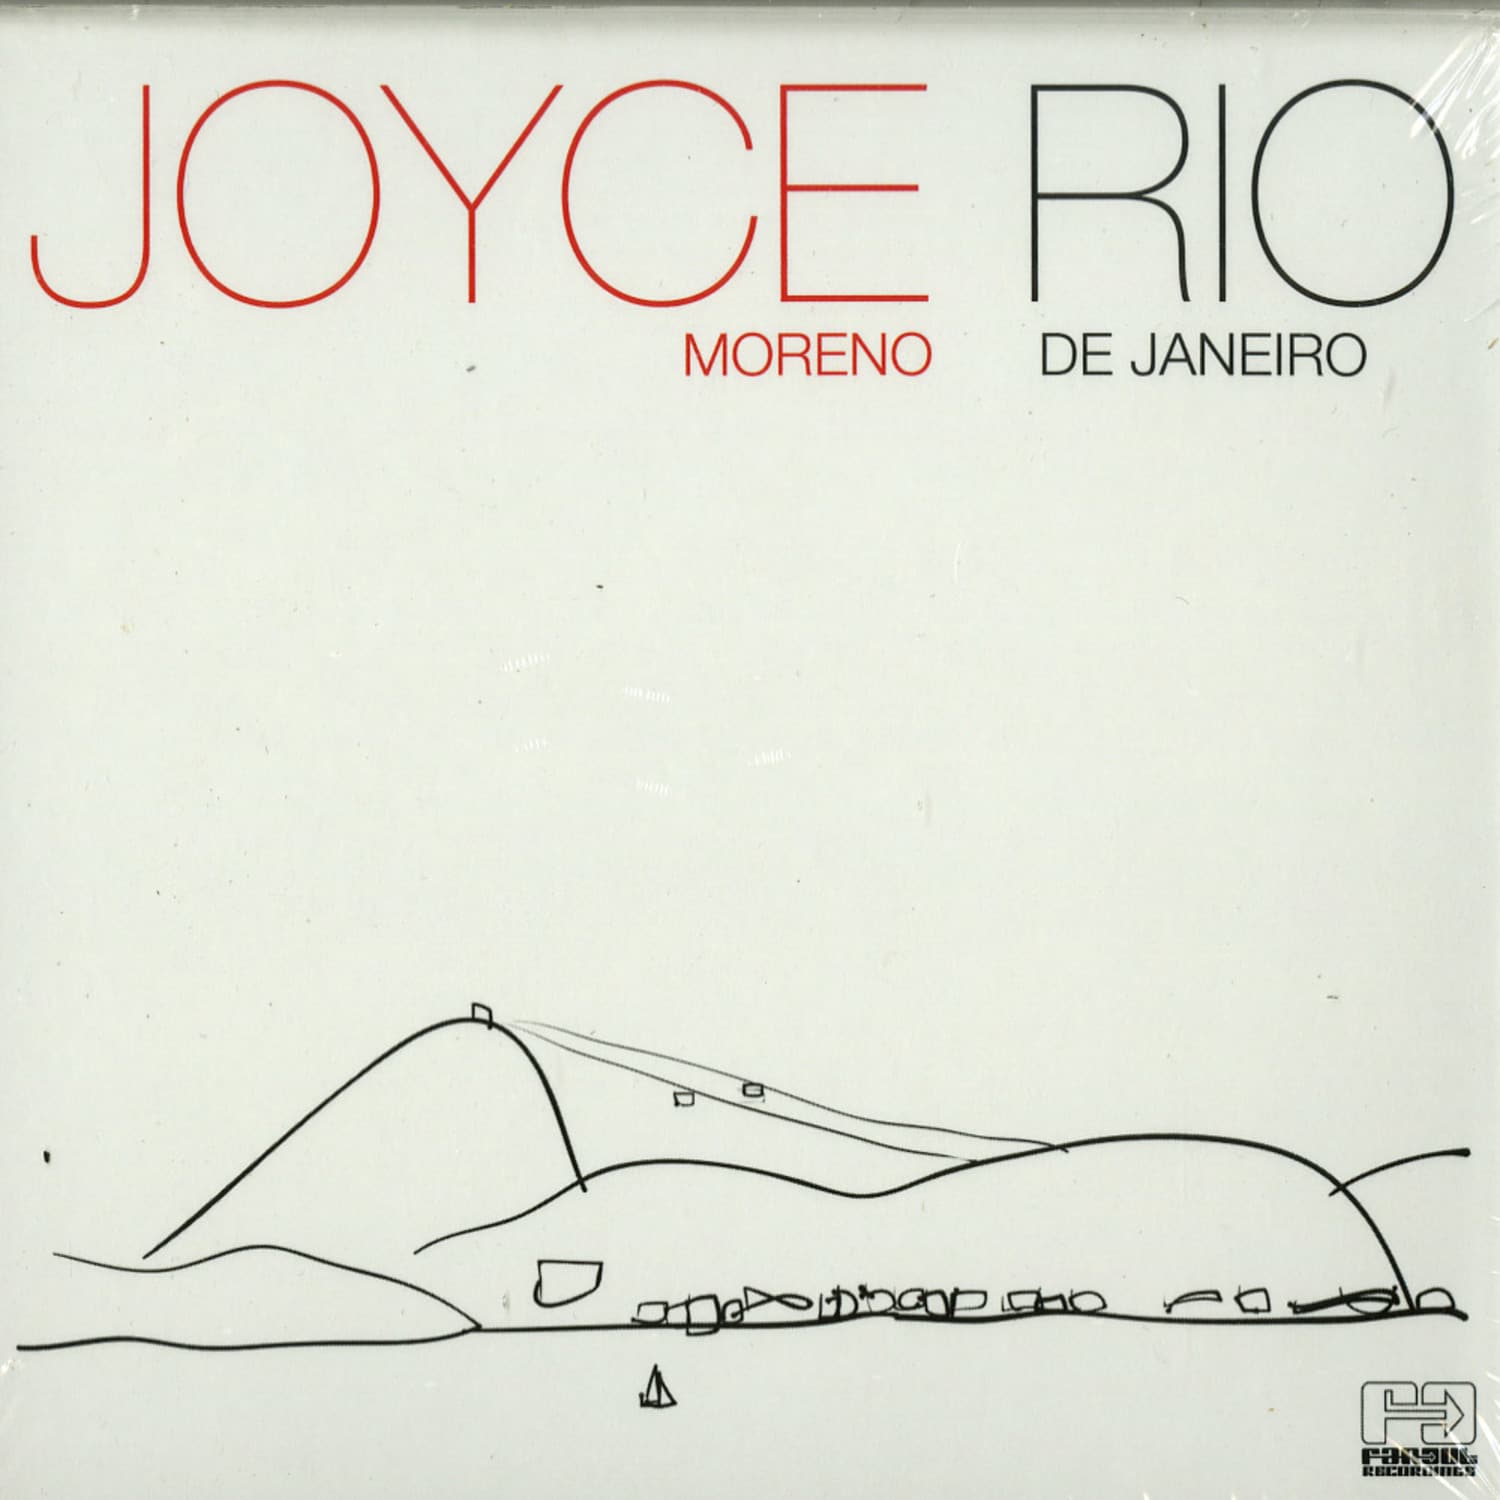 Joyce Moreno - RIO DE JANEIRO 